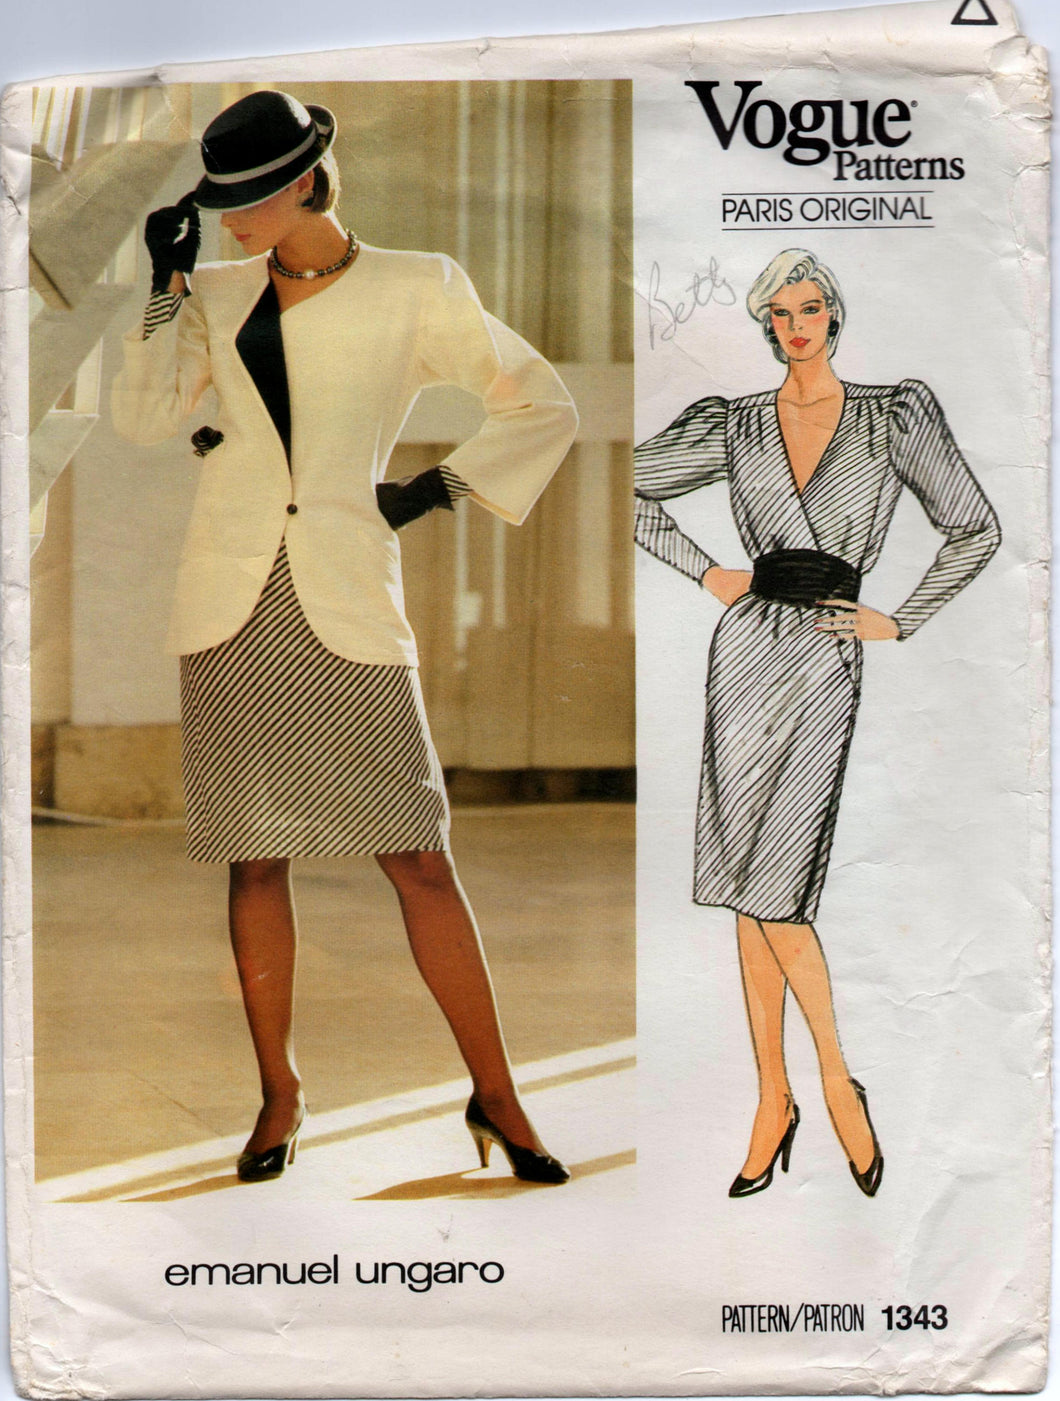 1980's Vogue Paris Original One-Piece Wrap Dress and Jacket Pattern - Emanuel Ungaro - Bust 34